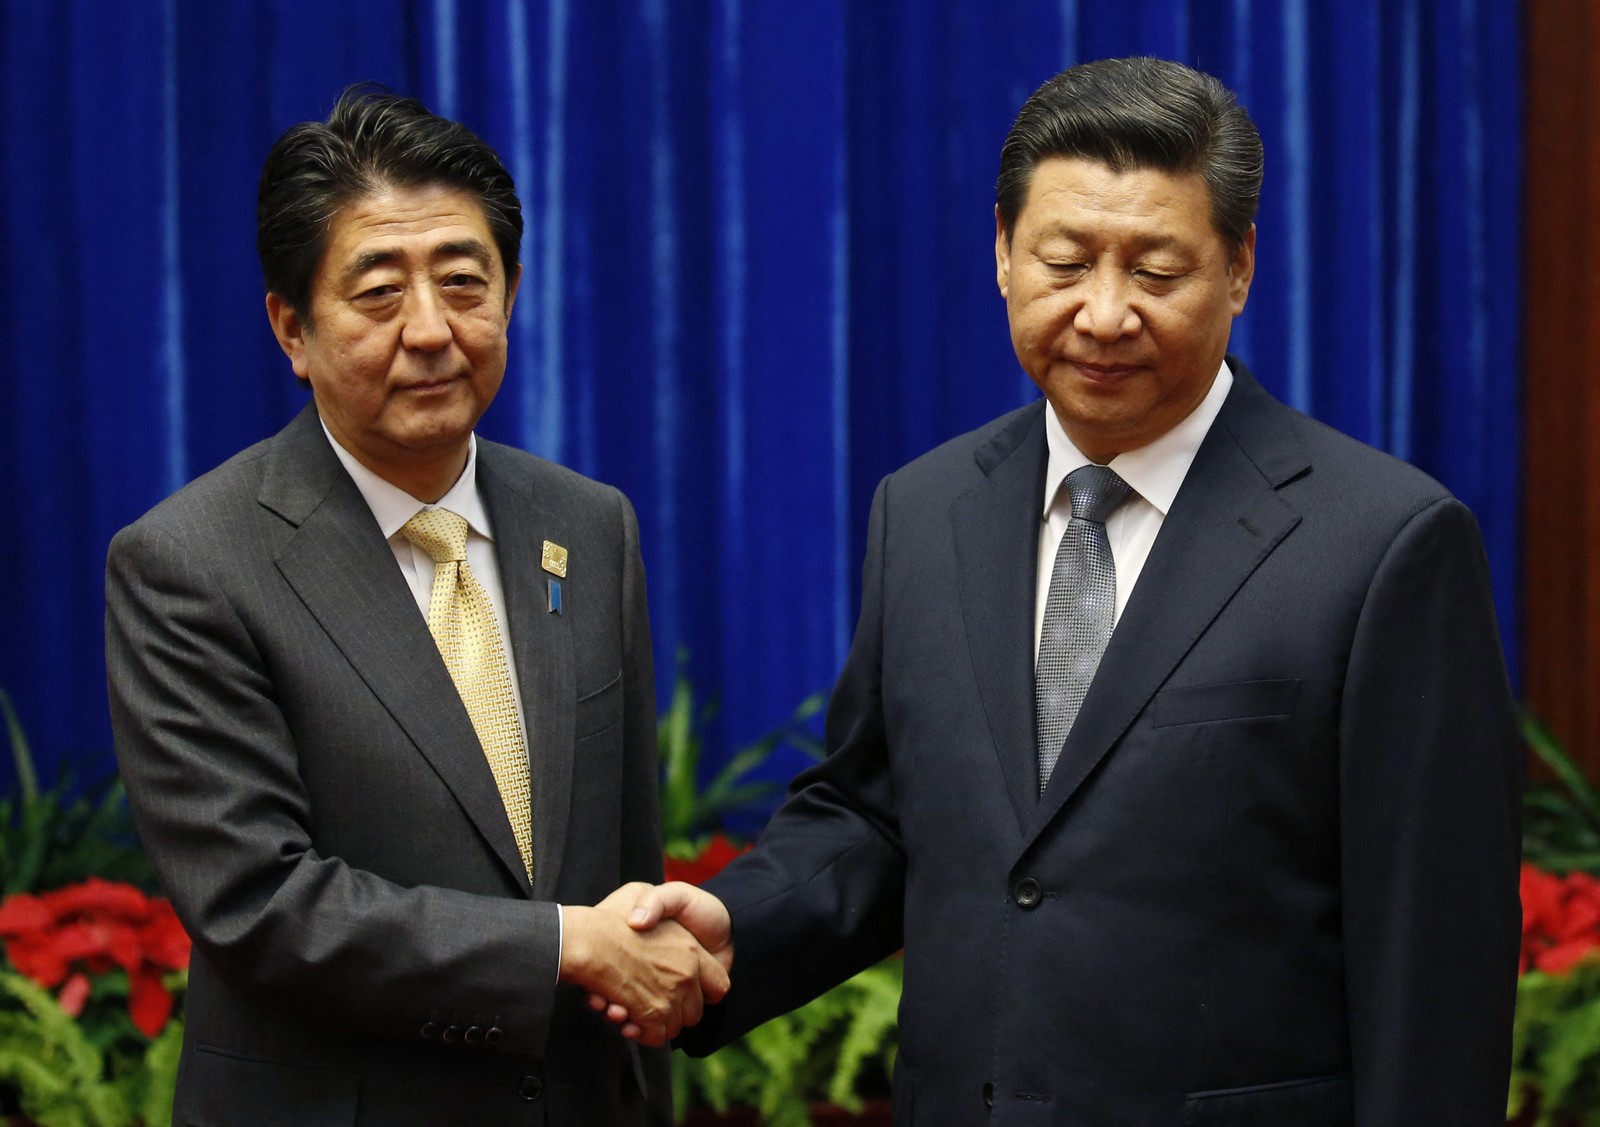 Presidente da China Xi Jinping cumprimenta o primeiro-ministro do Japão Shinzo Abe, no Grande Salão do Povo, à margem da Cúpula de Cooperação Econômica Ásia-Pacífico (APEC), em Pequim  — Foto: KIM KYUNG-HOON / AFP 